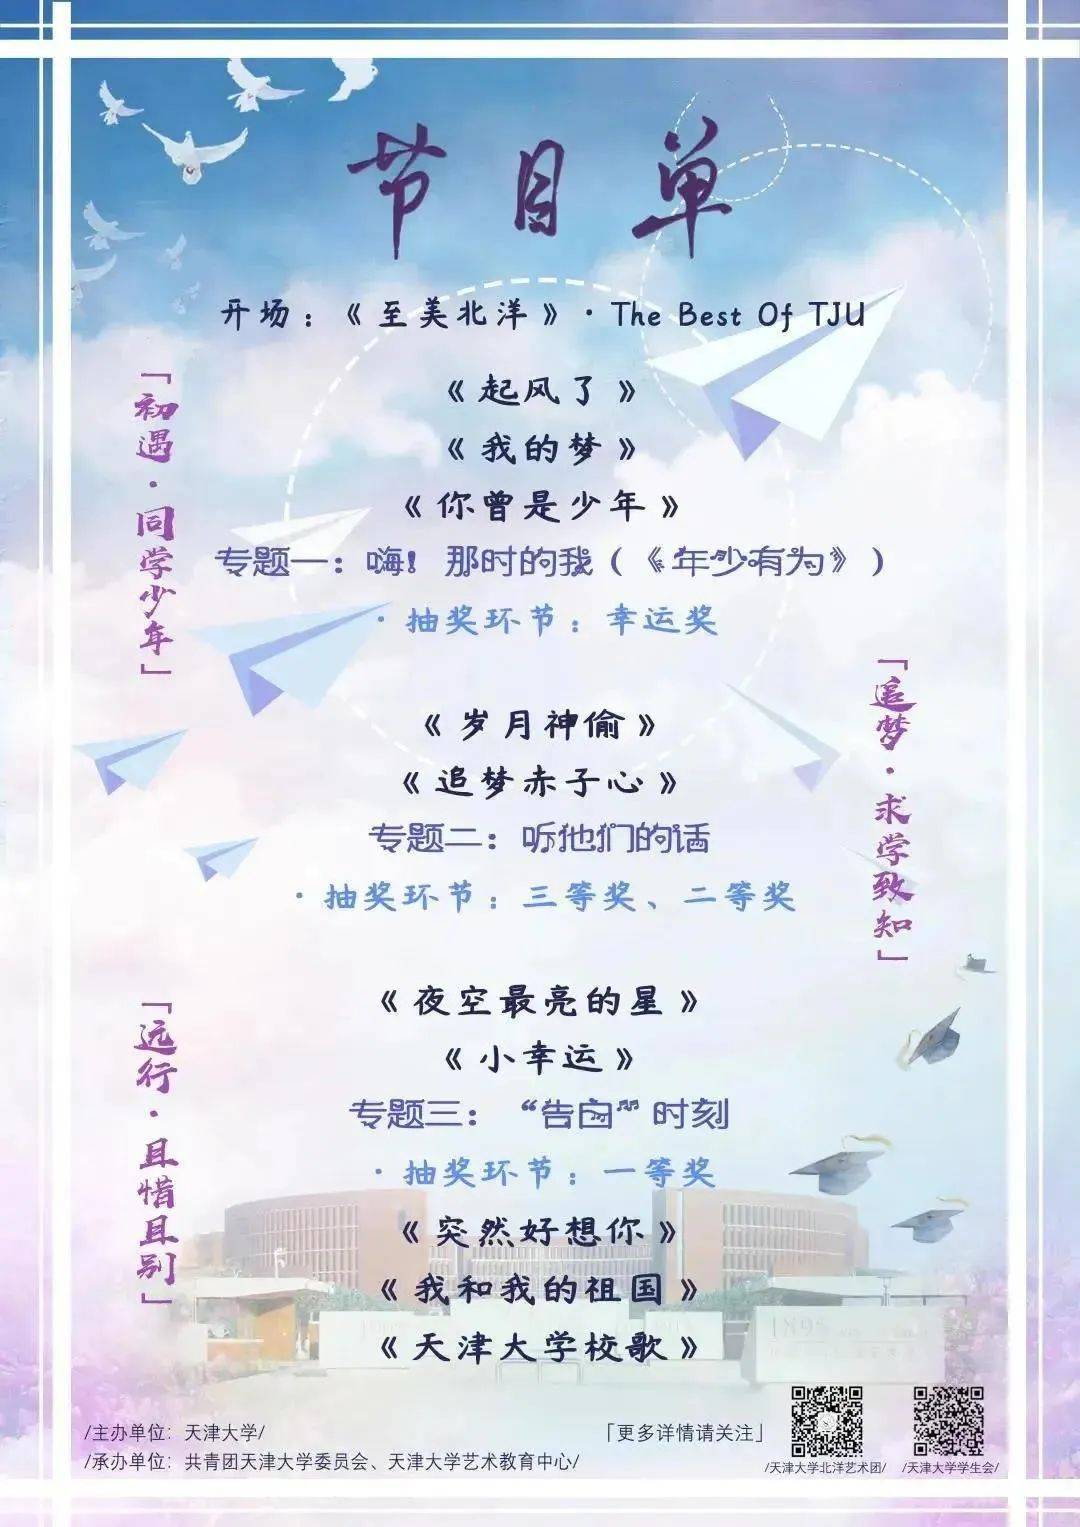 直播预告:2020年天津大学毕业典礼,毕业歌会!让我们云端相聚!